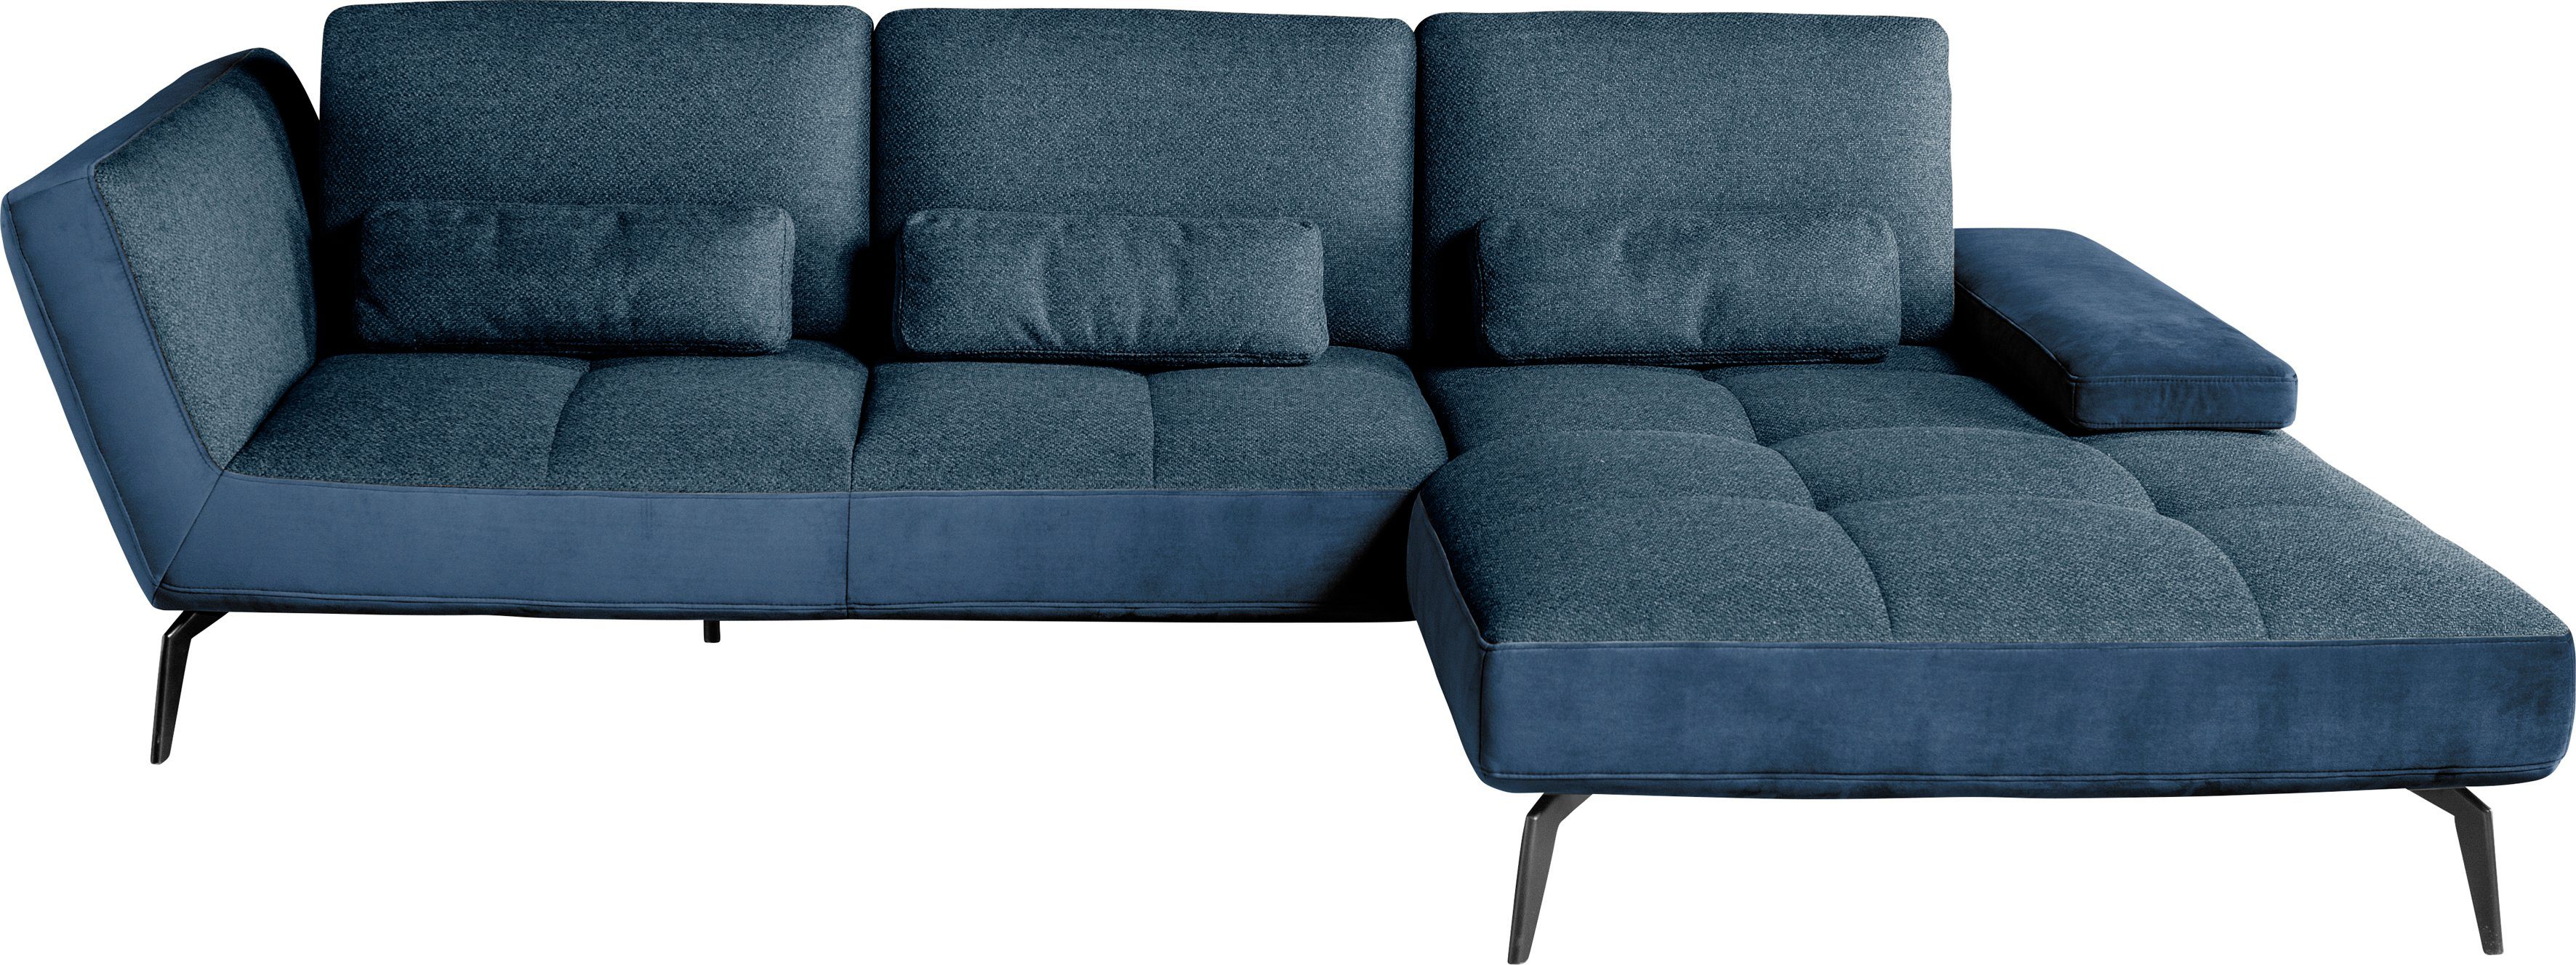 set one by Musterring Ecksofa 4300, und SO dunkelblau49/blau81 Nierenkissen inklusive Sitztiefenverstellung